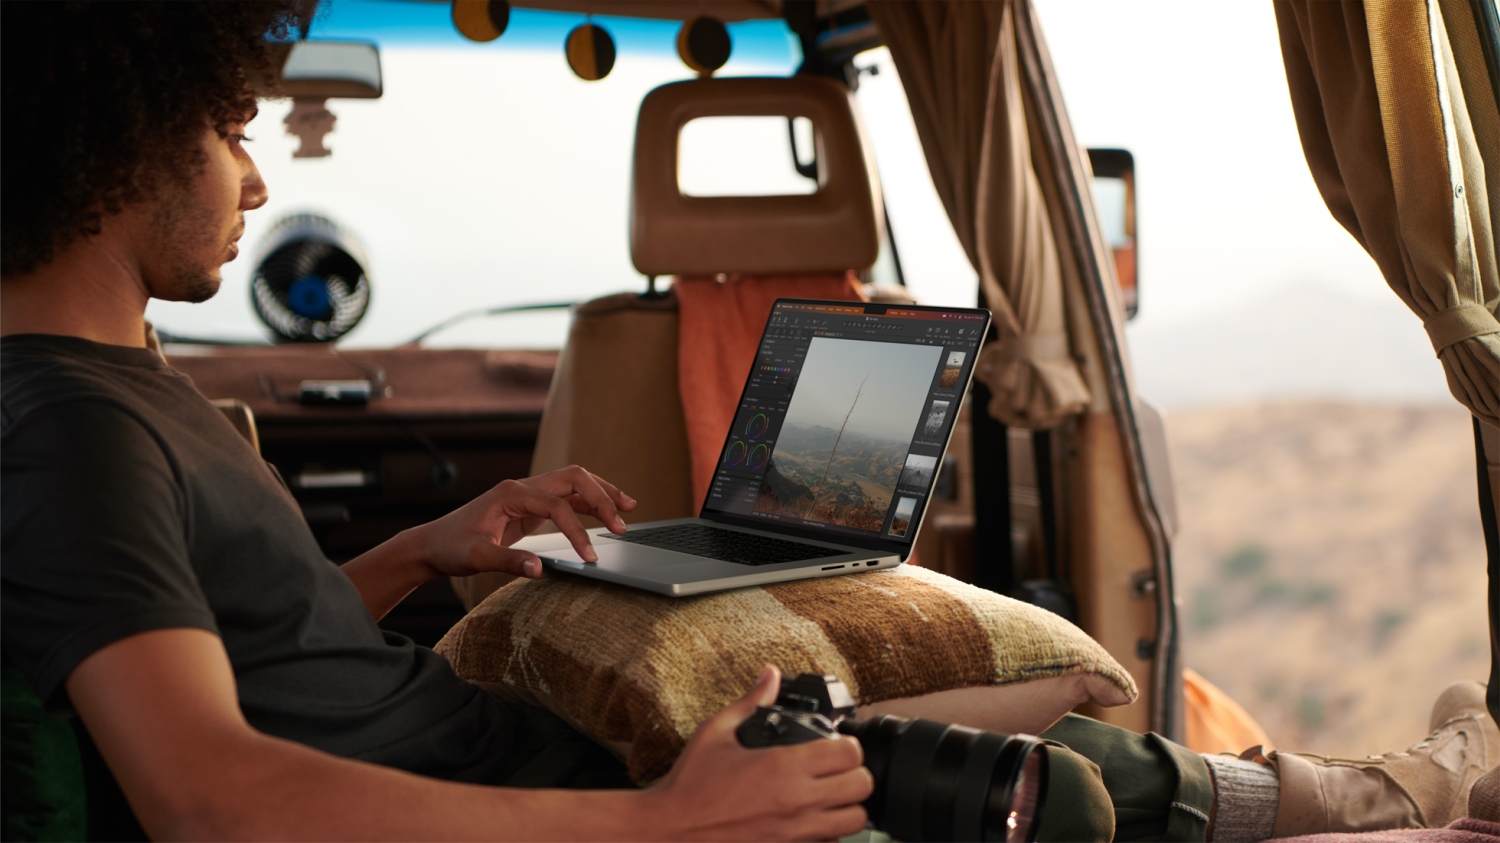 Uma pessoa sentada em um veículo usando um MacBook Pro no colo.